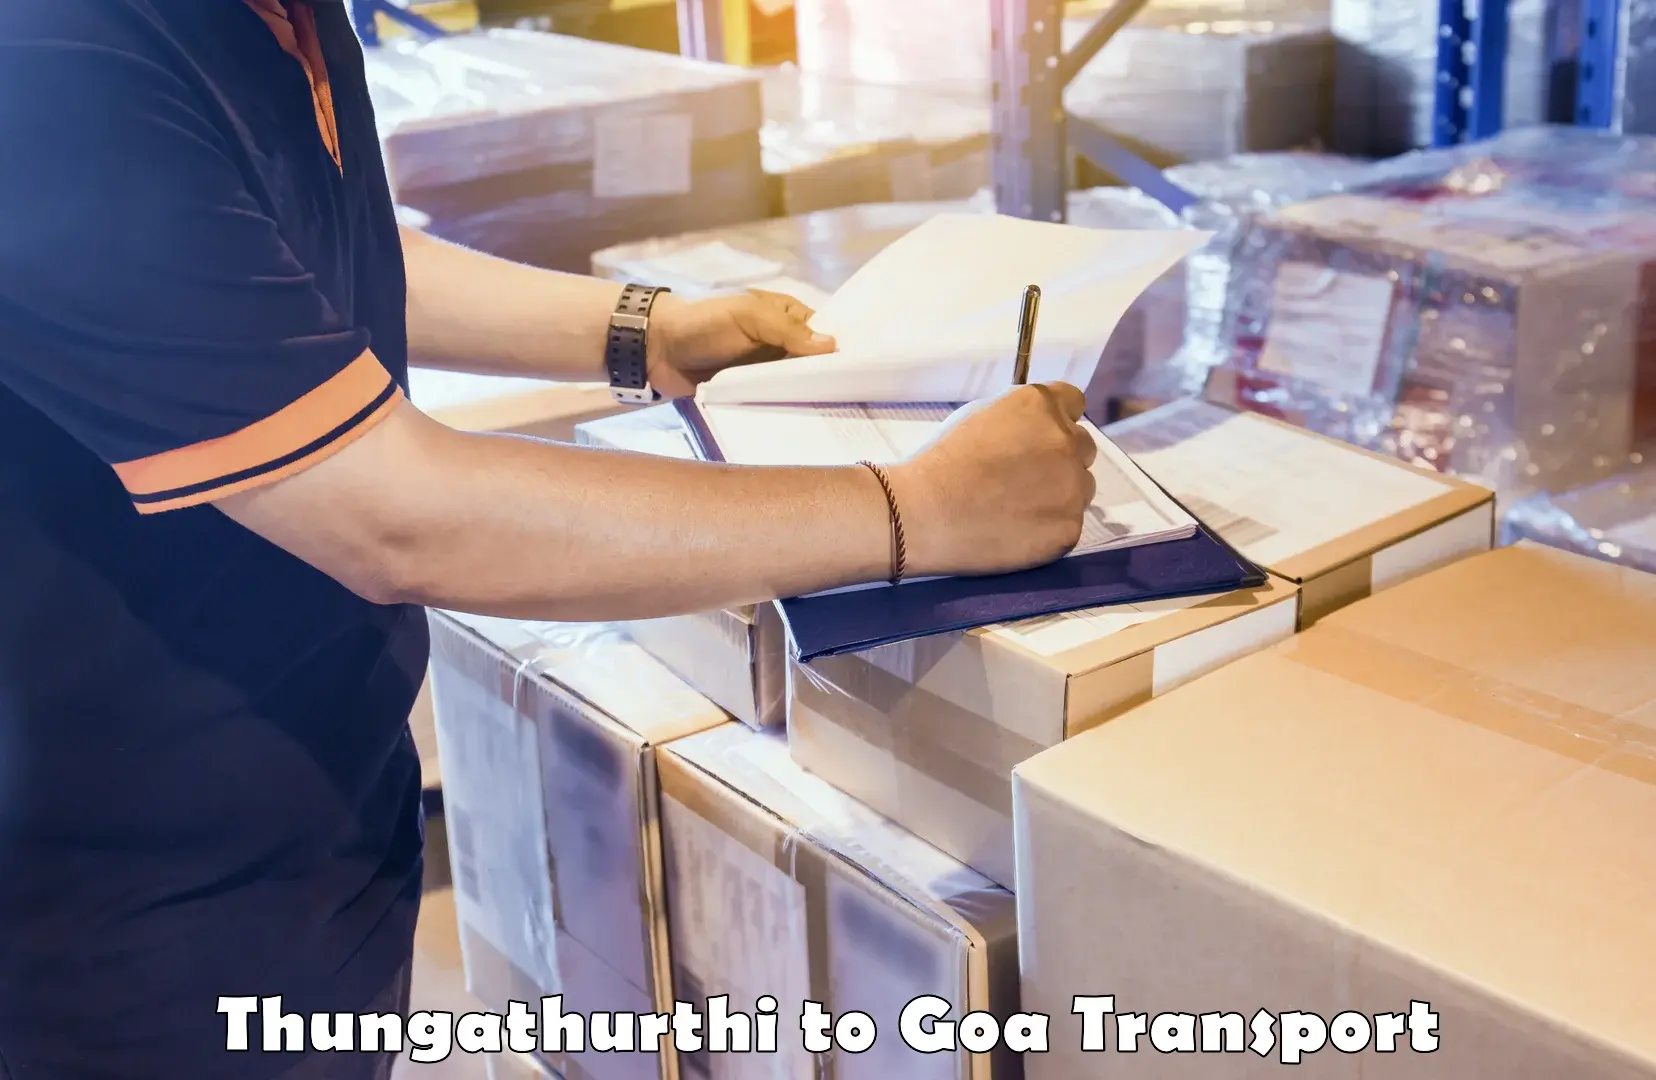 Daily parcel service transport Thungathurthi to Bardez